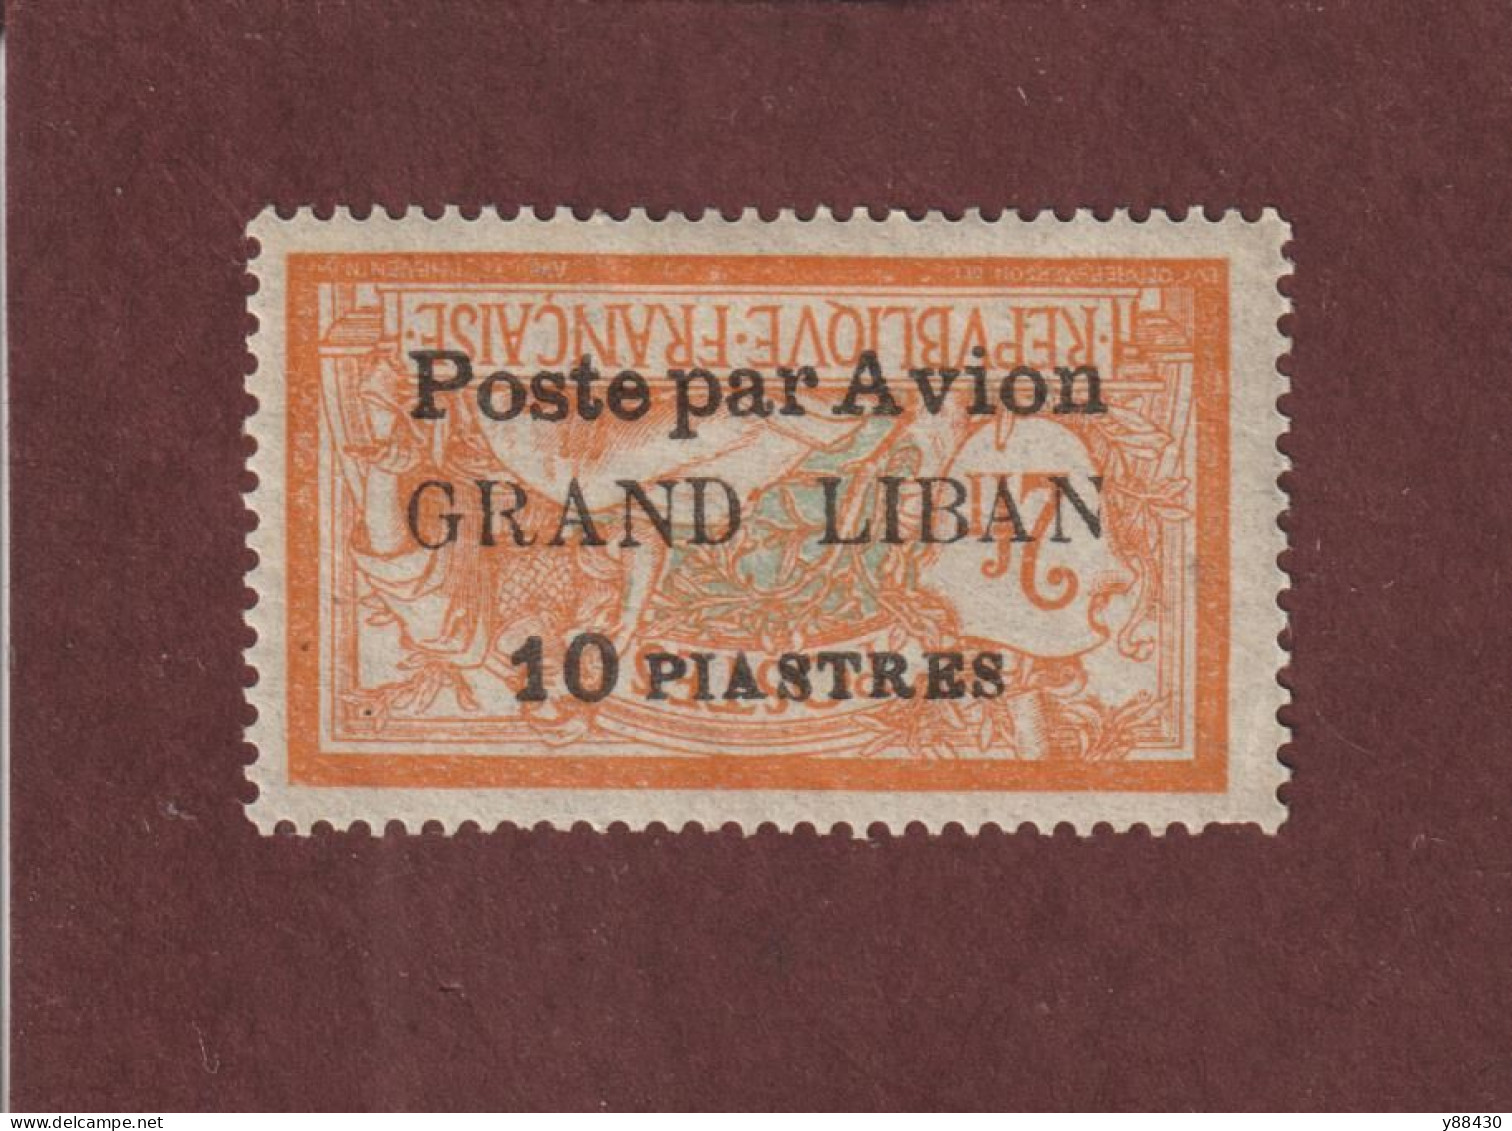 GRAND LIBAN - AVION - 4a De 1924 - Neuf * - Timbre Signé Au Dos - Type Merson Surcharge Renversé - 5 Scan - Luftpost